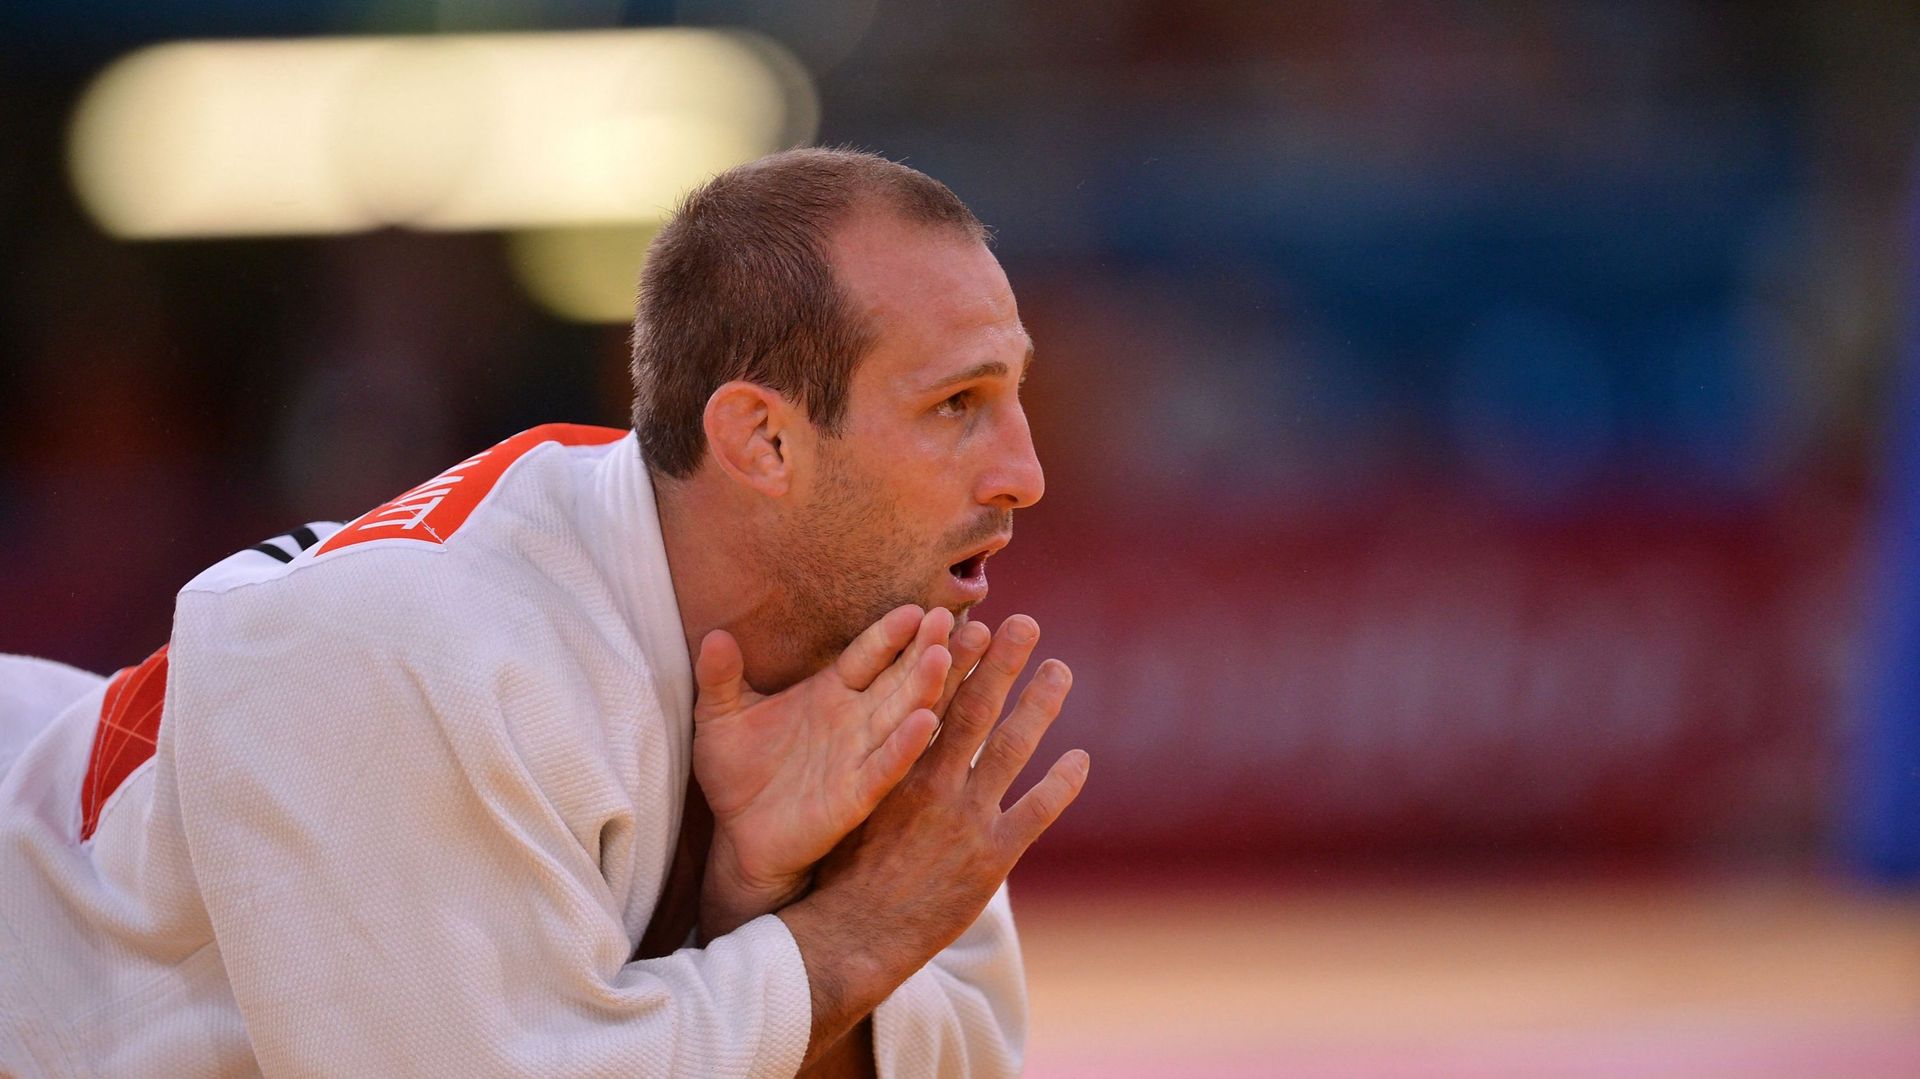 L’entraîneur de judo Alain Schmitt arrêté pour violences conjugales sur la championne olympique Margaux Pinot